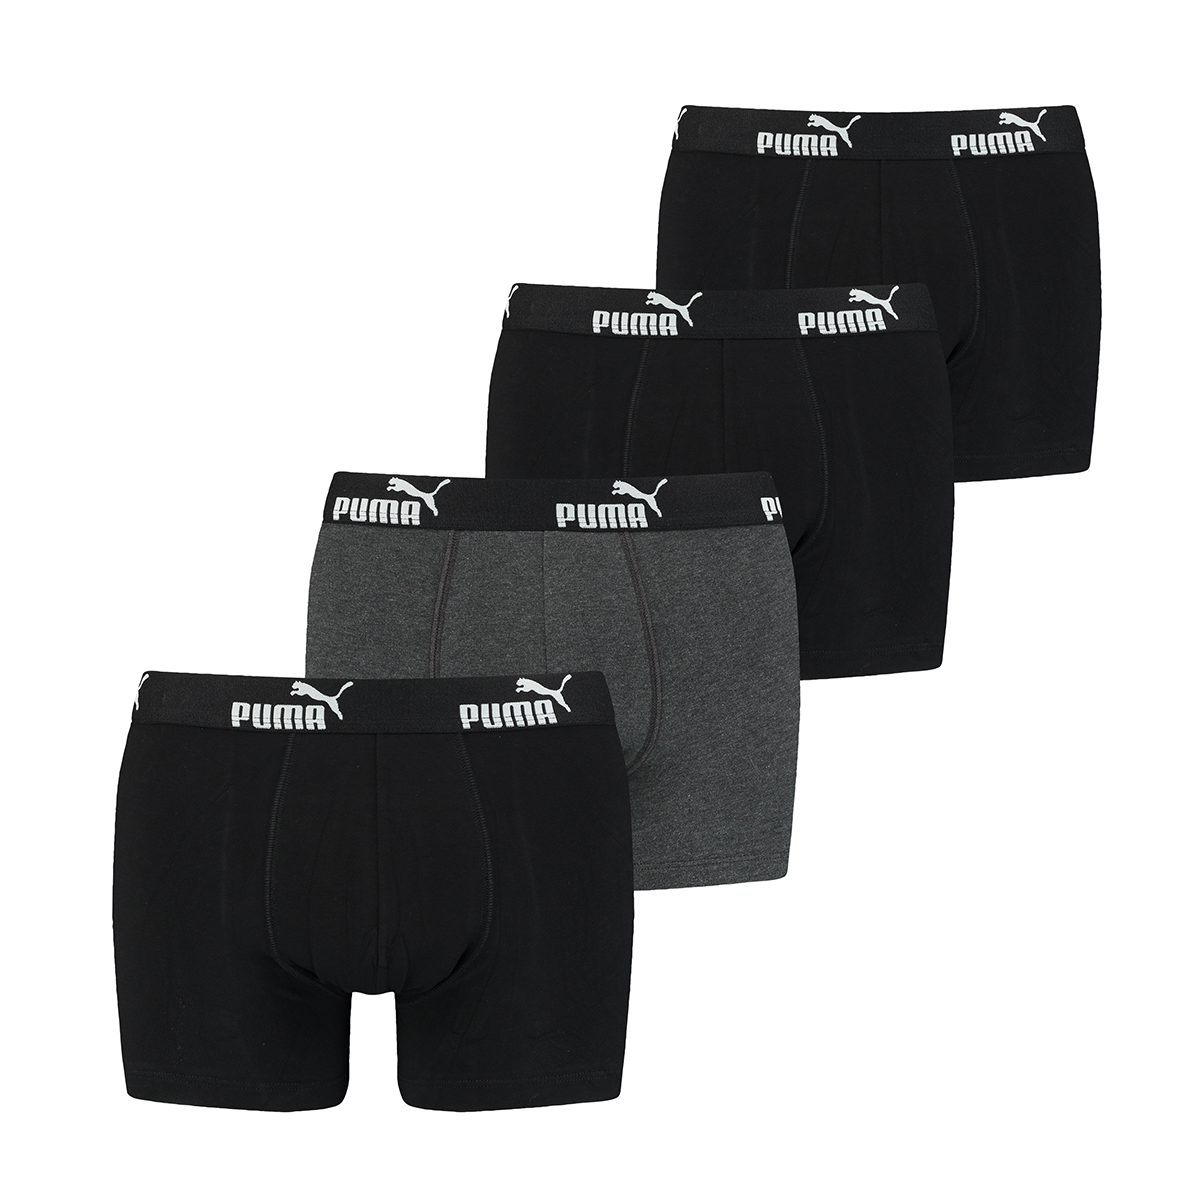 4 er Pack Puma Boxer Boxershorts Herren Unterwäsche sportliche Retro Pants